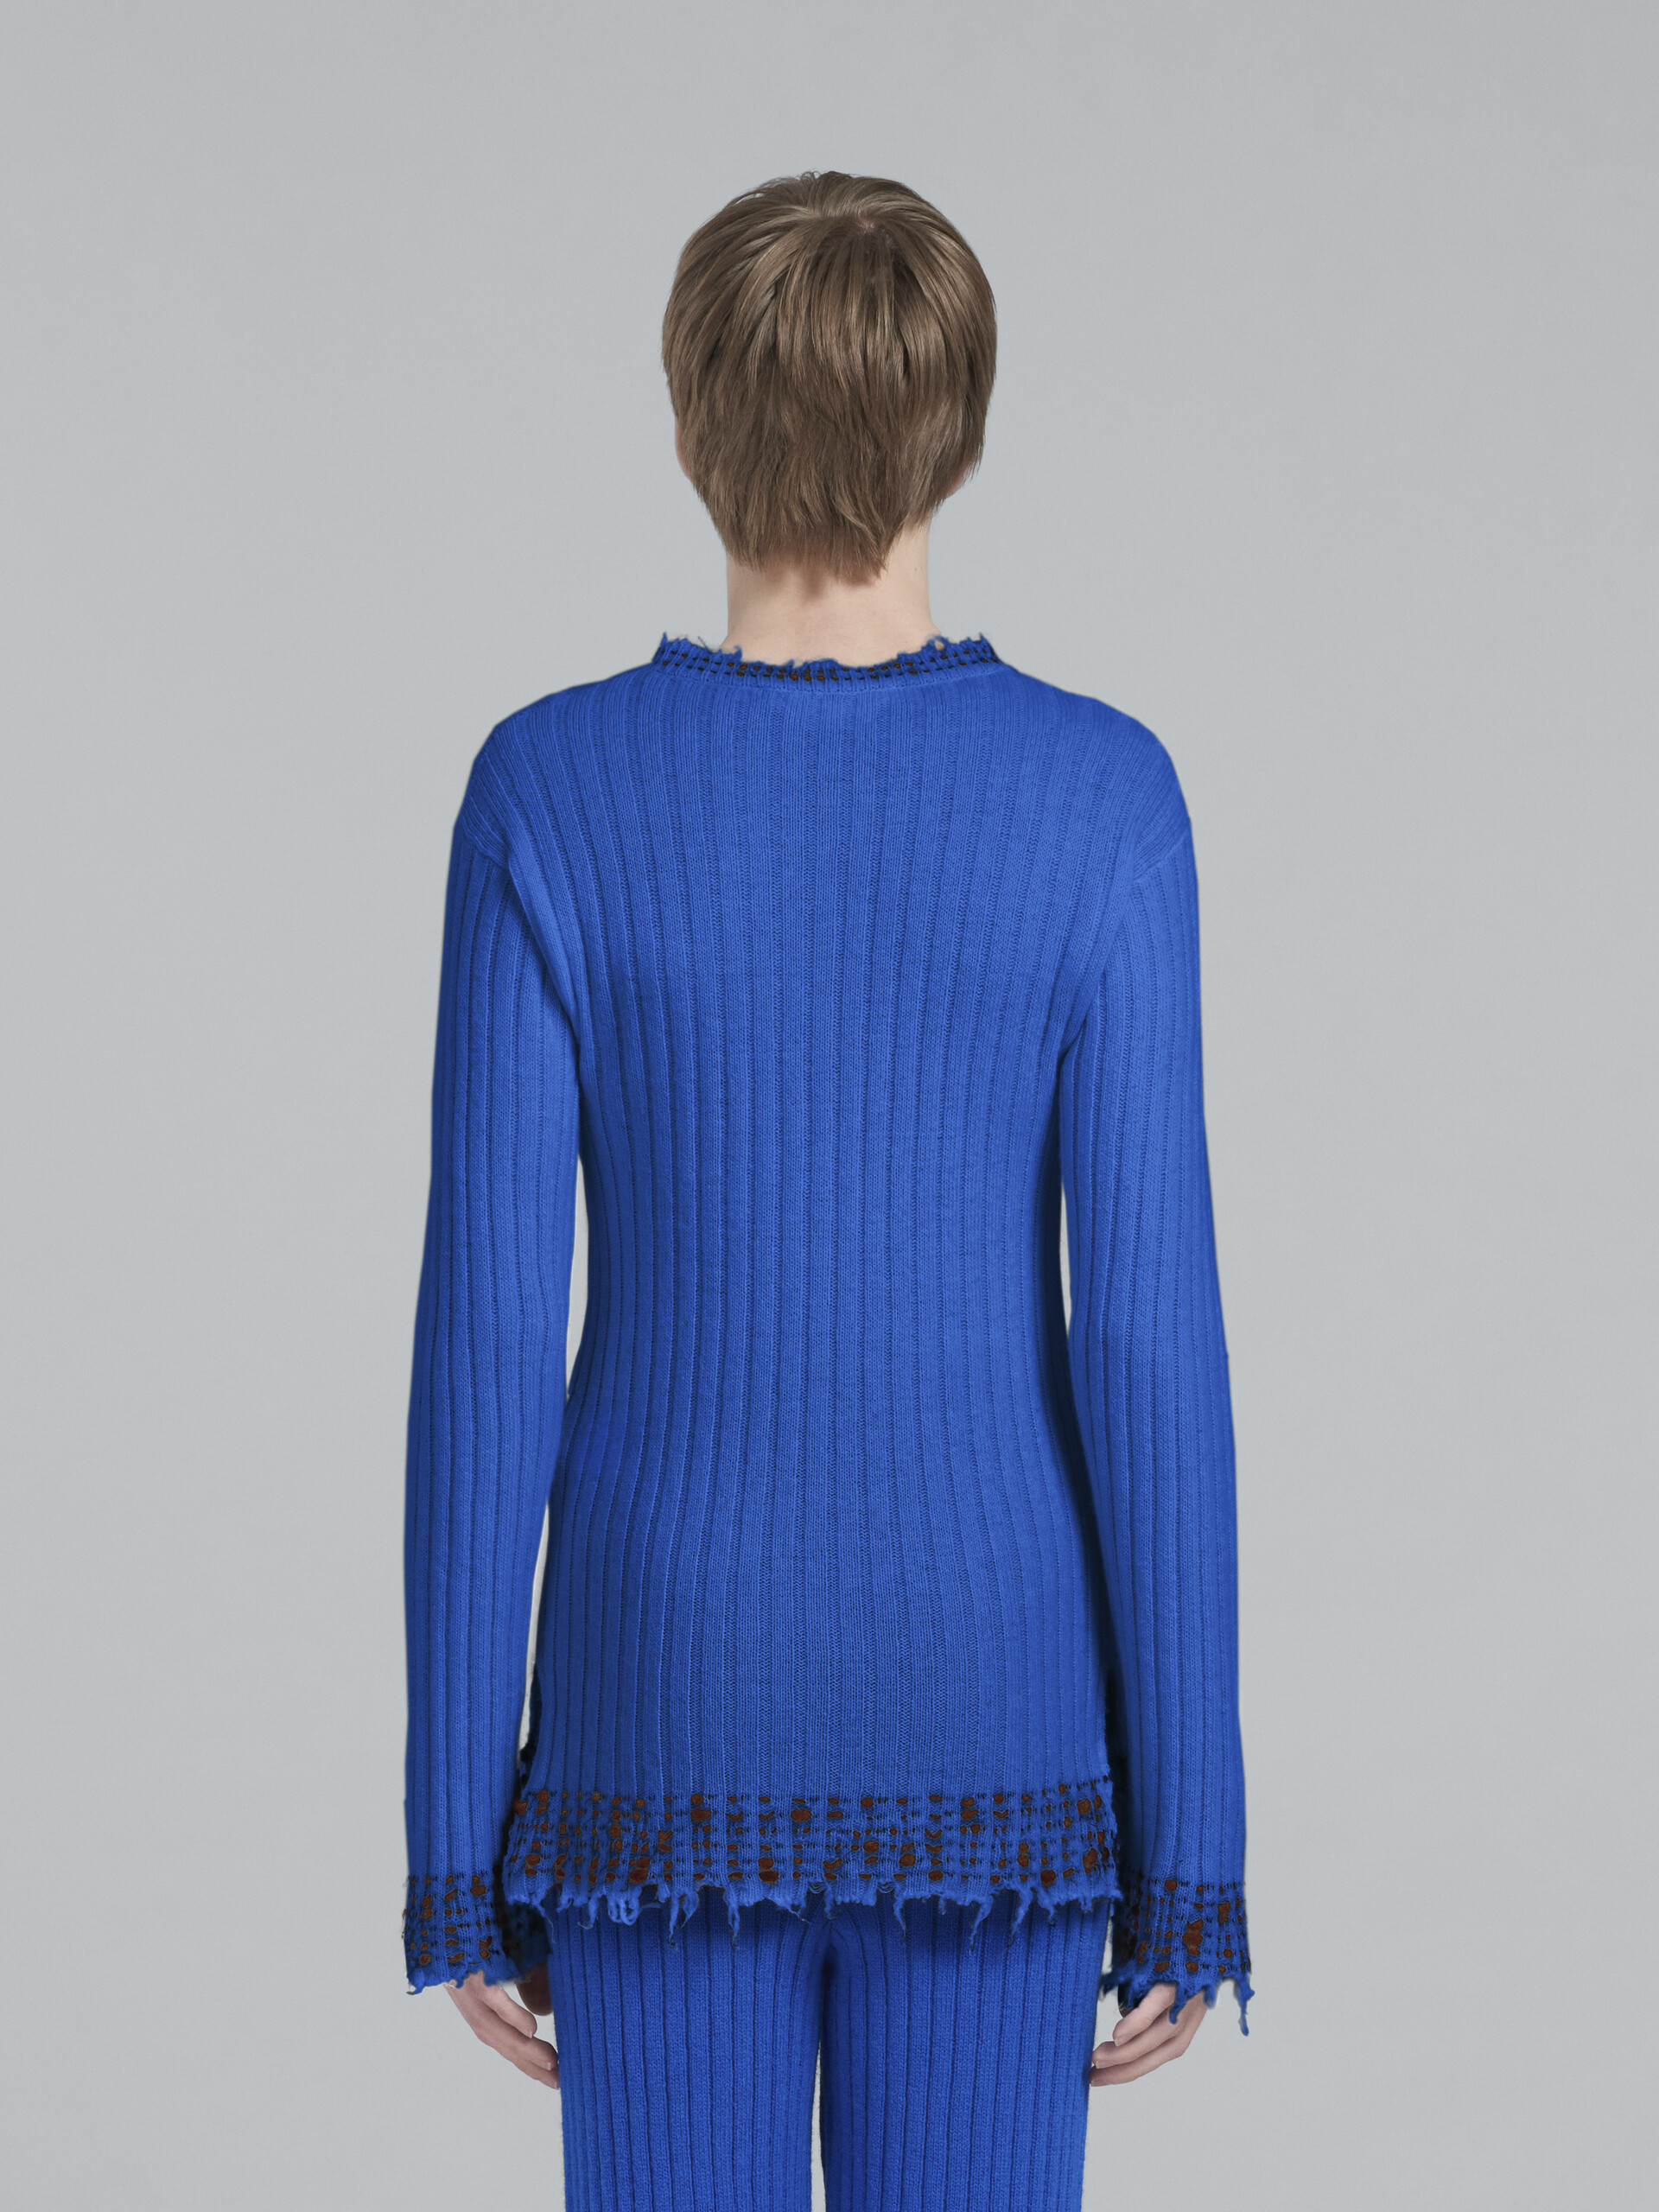 블루 울 니트 스웨터 - Pullovers - Image 3